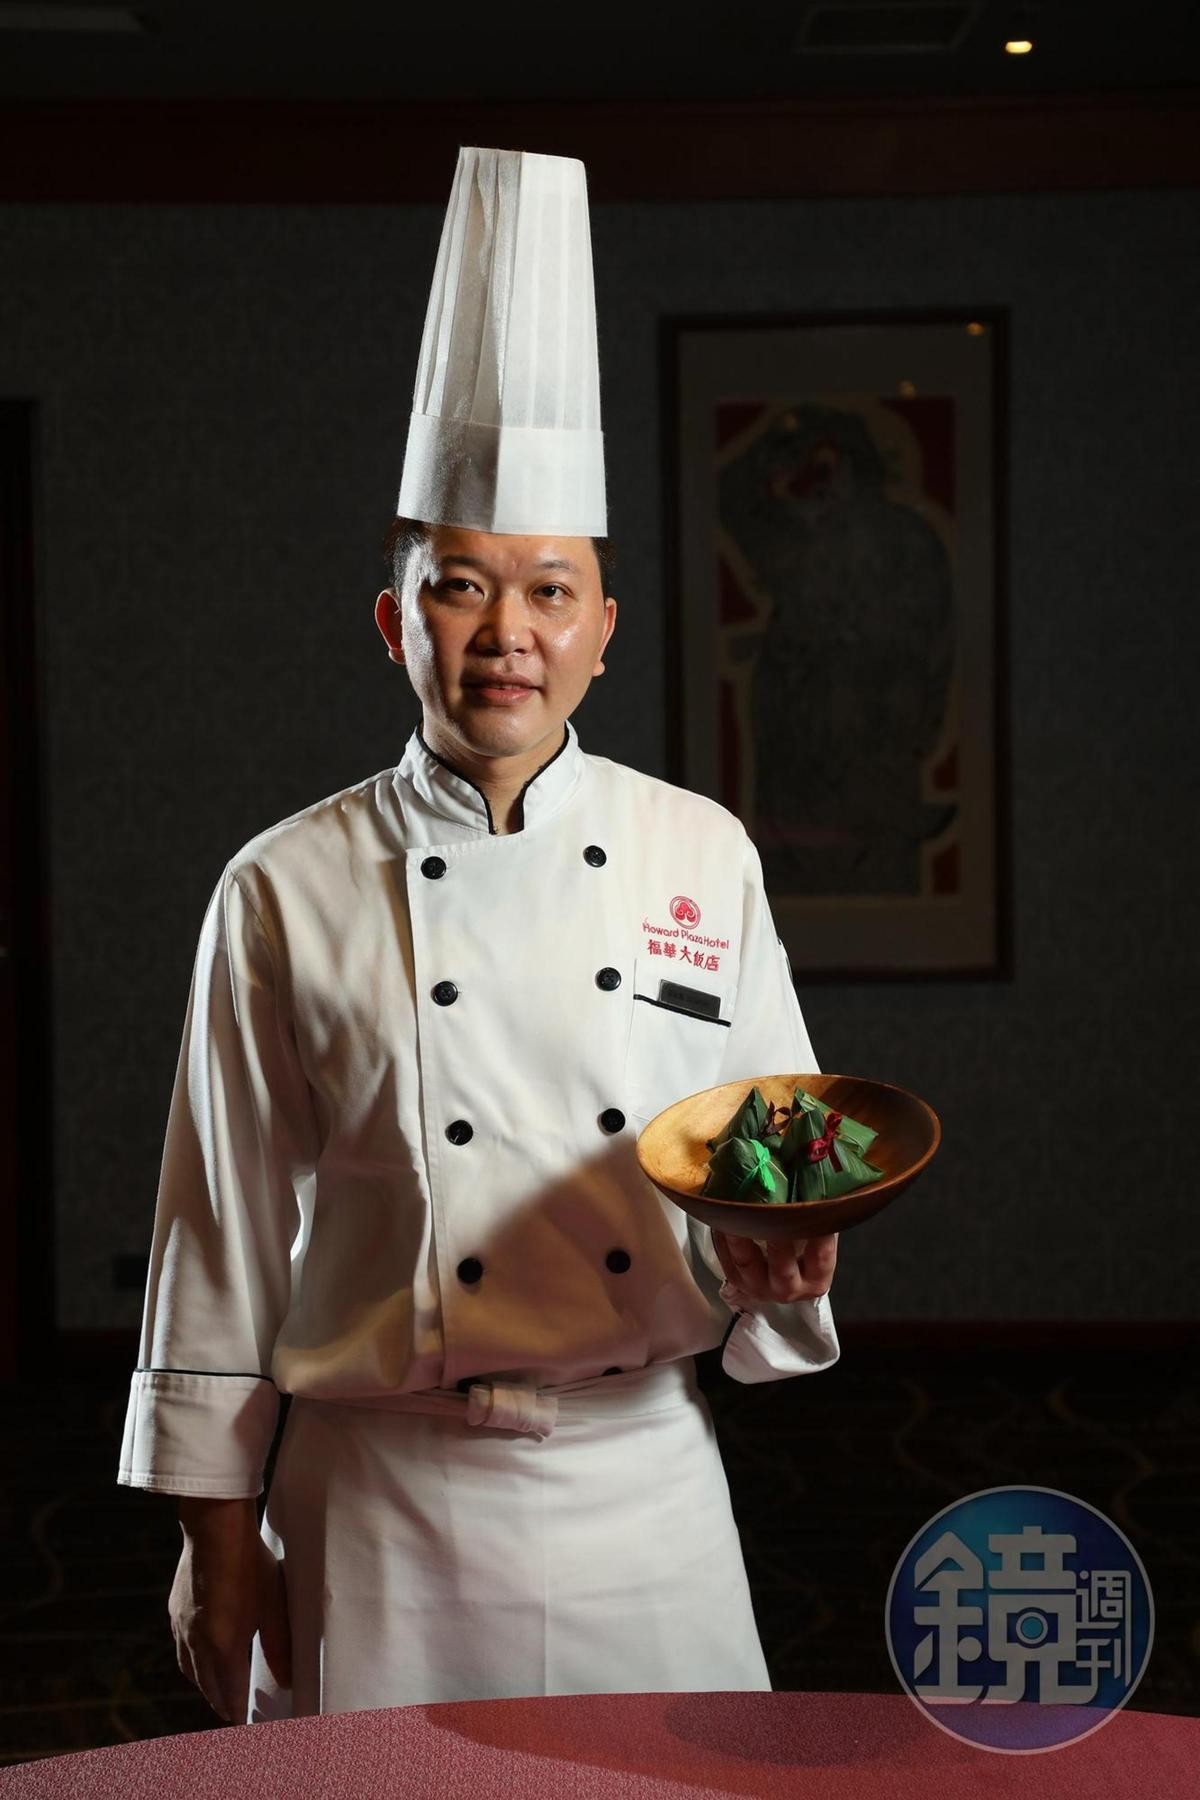 「台北福華大飯店」餐飲部點心房主廚巫政翰今年推出的冰粽令人驚豔。